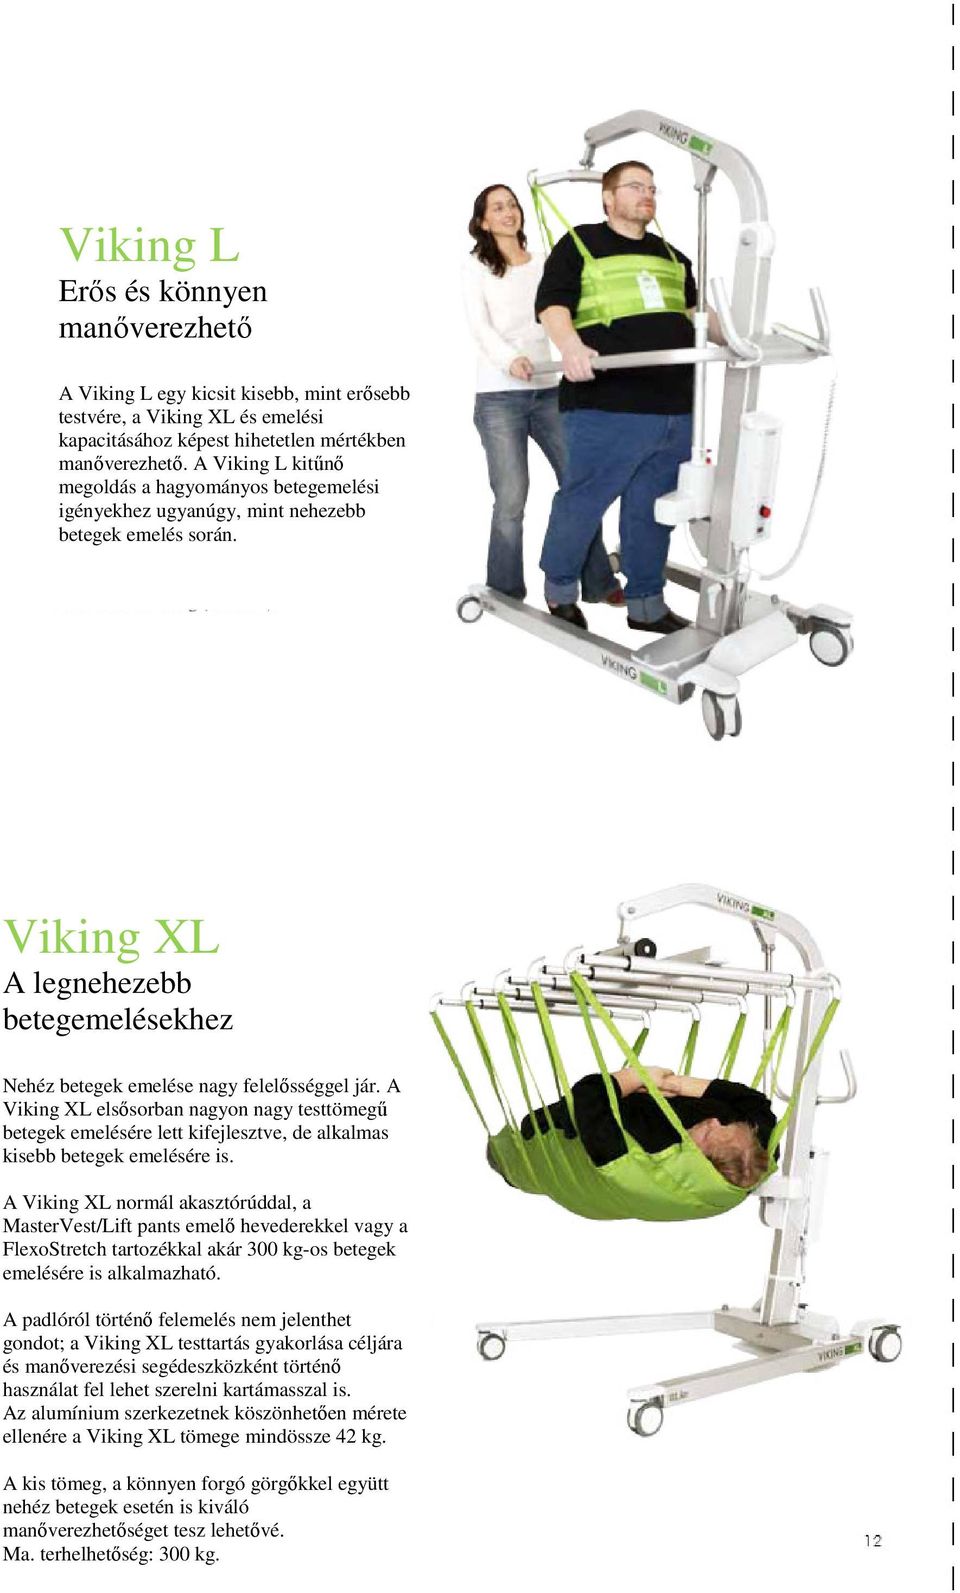 A Viking XL elsősorban nagyon nagy testtömegű betegek emelésére lett kifejlesztve, de alkalmas kisebb betegek emelésére is.